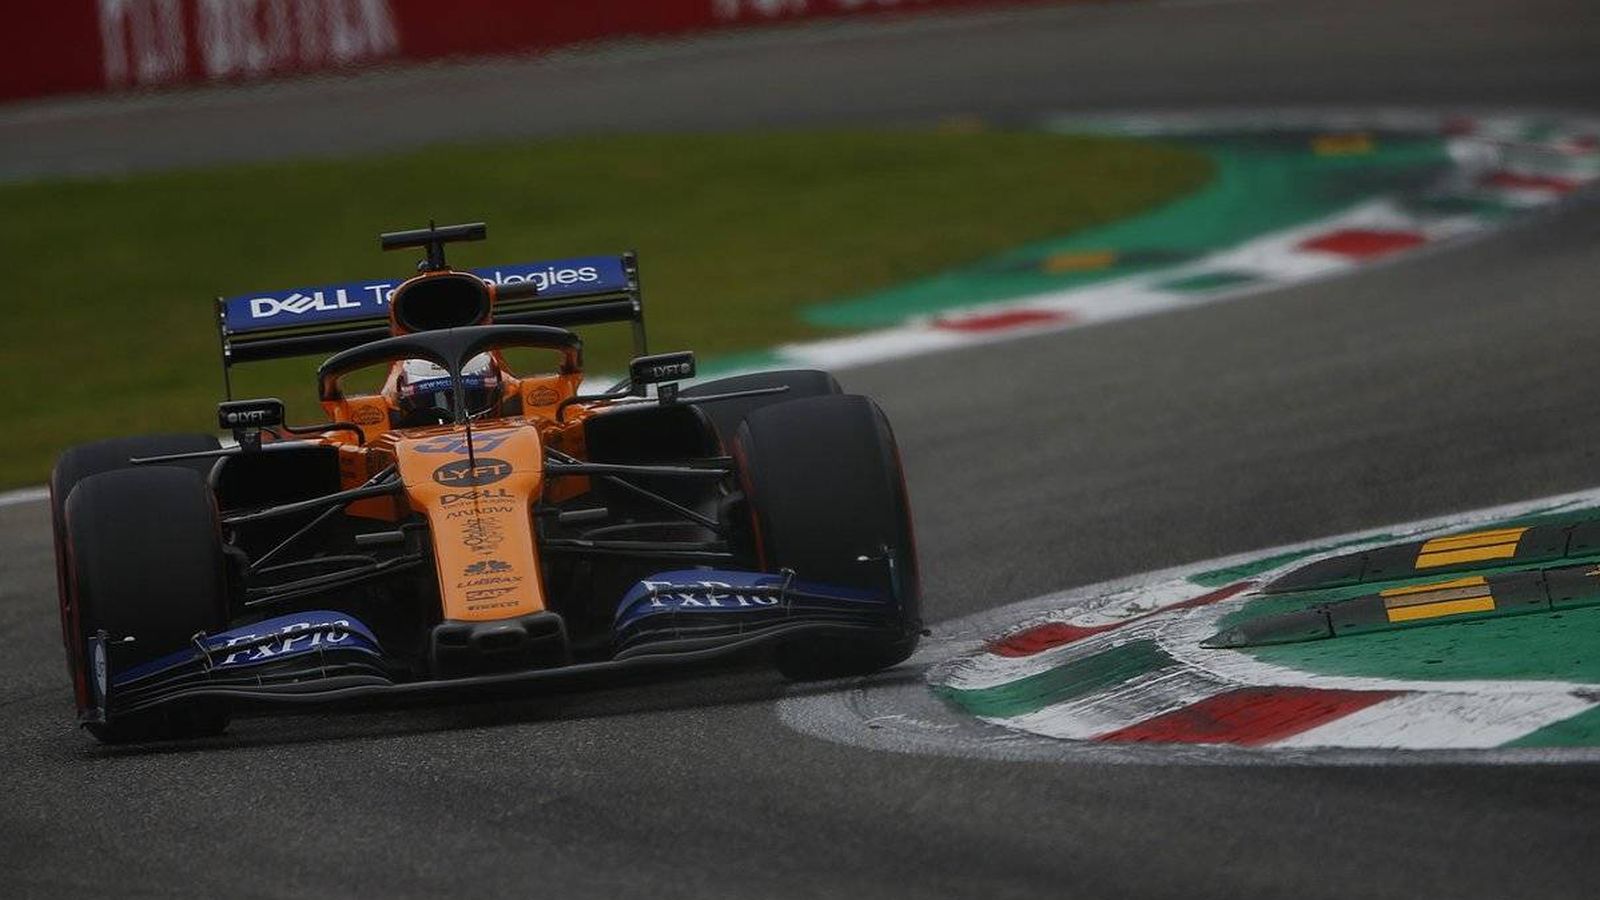 Foto: Carlos Sainz saldrá en séptima posición en el Gran Premio de Italia, por detrás de los dos monoplazas de Renault. (McLaren)